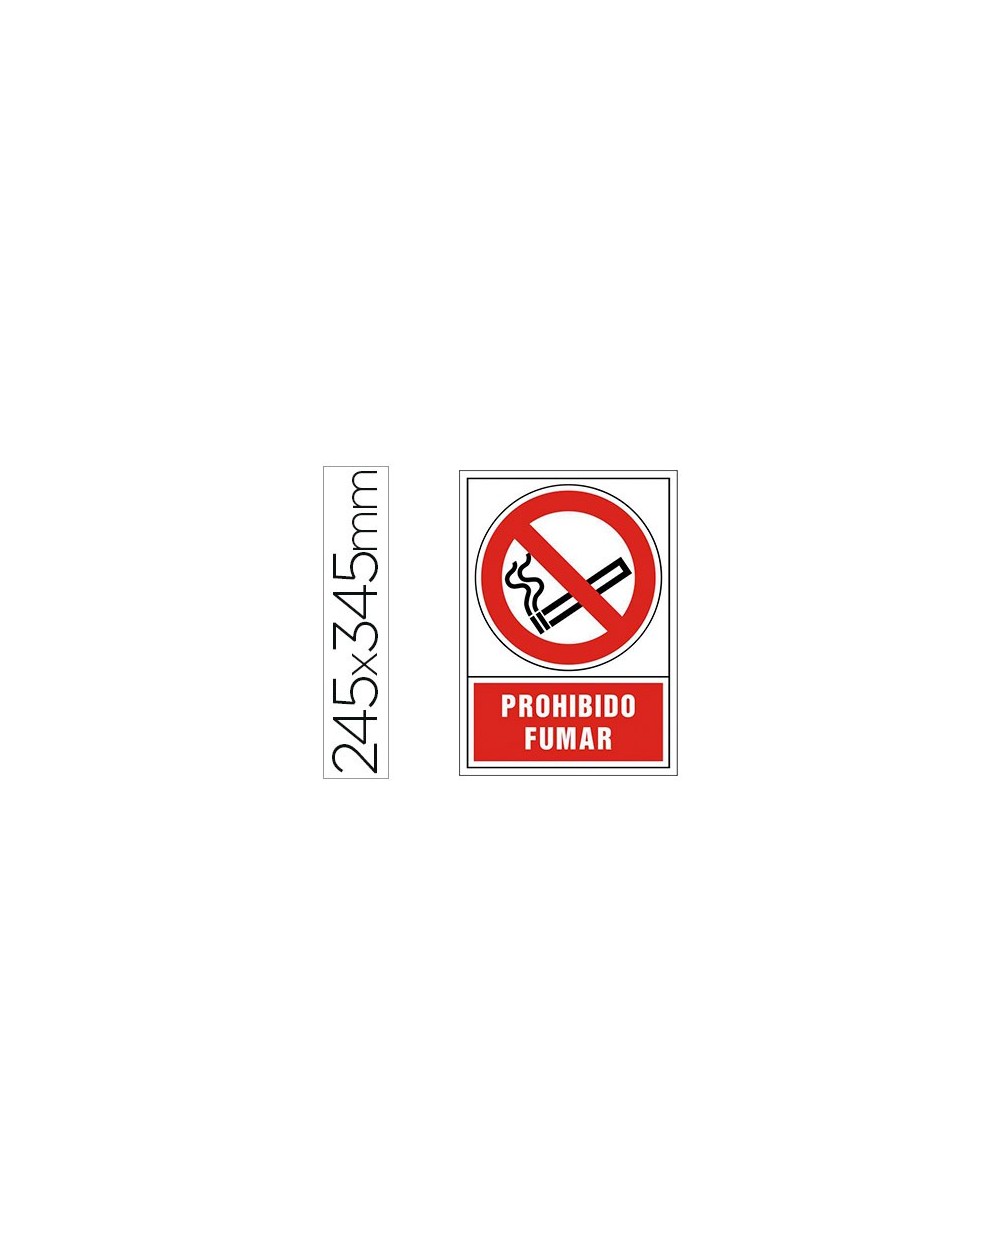 Pictograma syssa senal de prohibicion prohibido fumar en pvc 245x345 mm